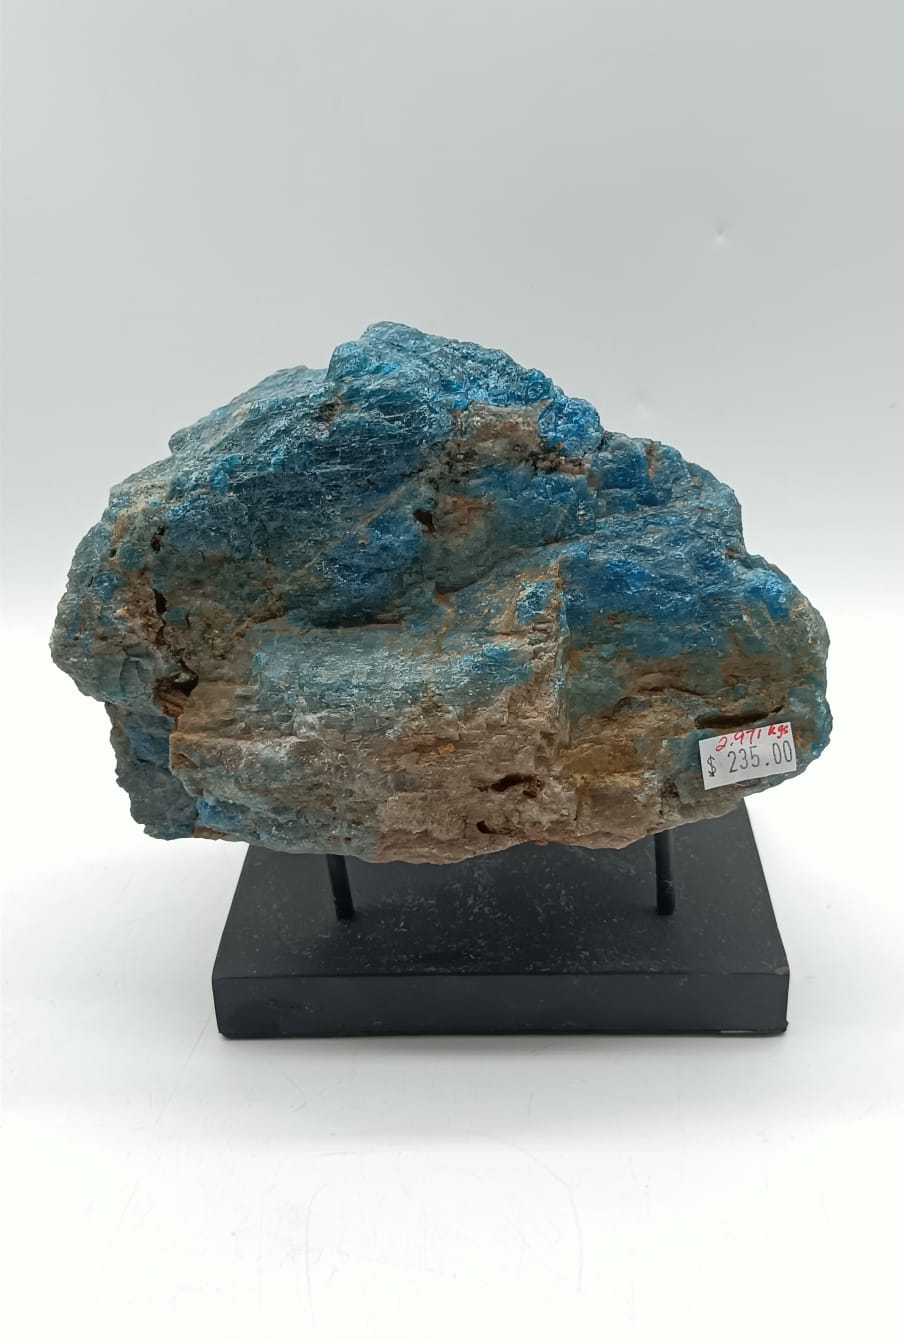 Blue Apatite Raw 2.971 Kgs